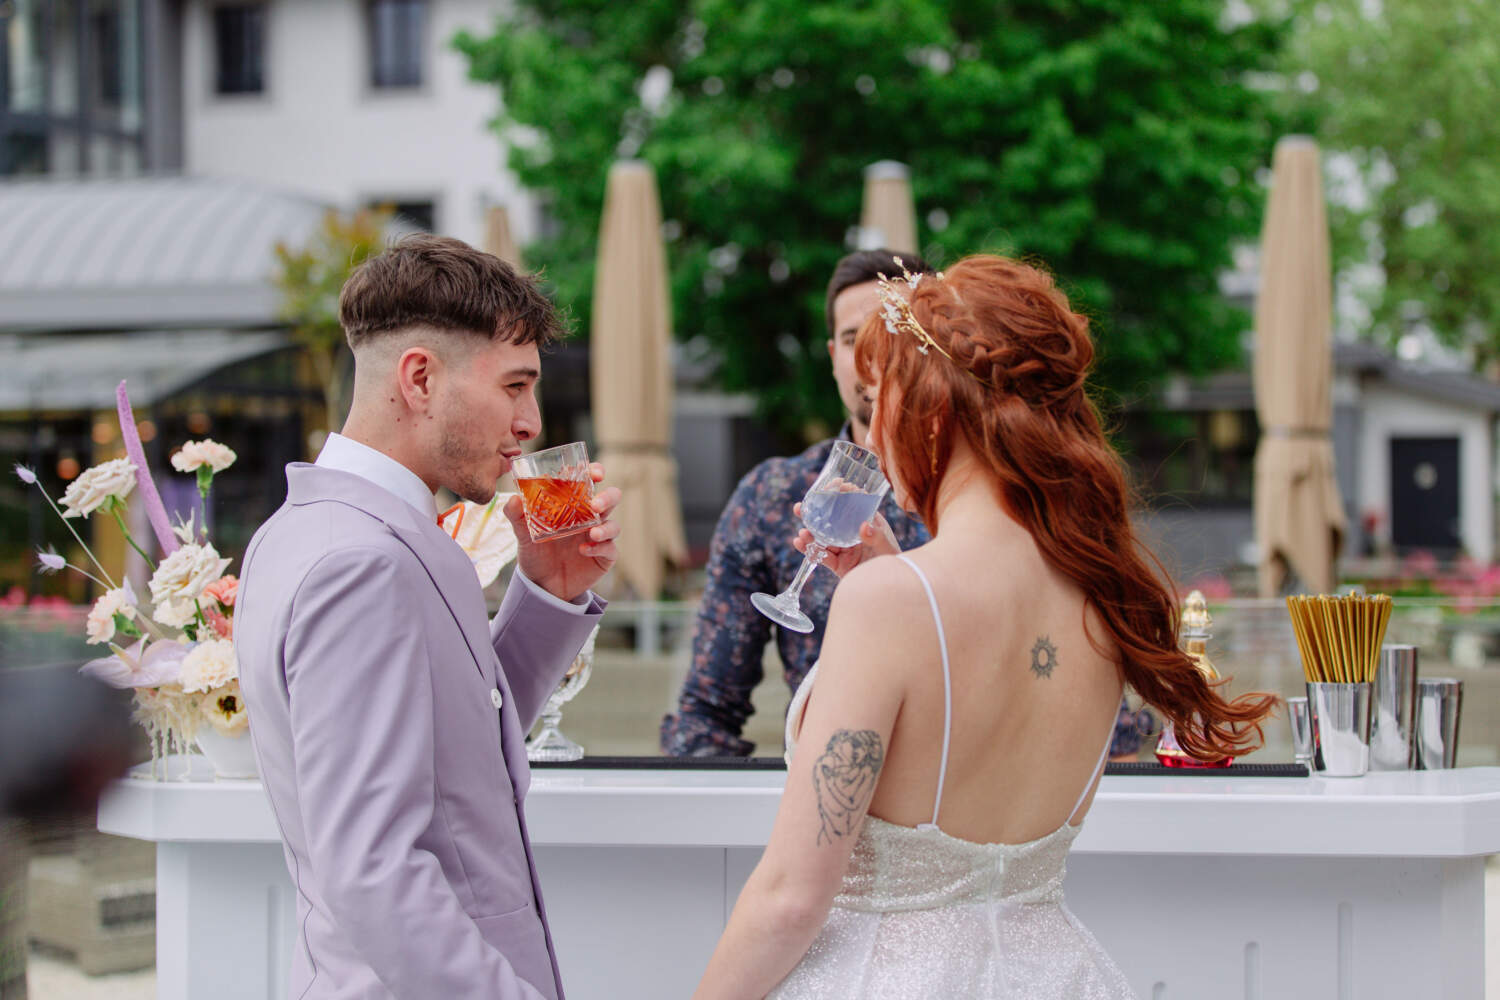 Faites vous servir des cocktails par un Barman Privé lors de votre mariage à Genève, Lausanne ou Montreux